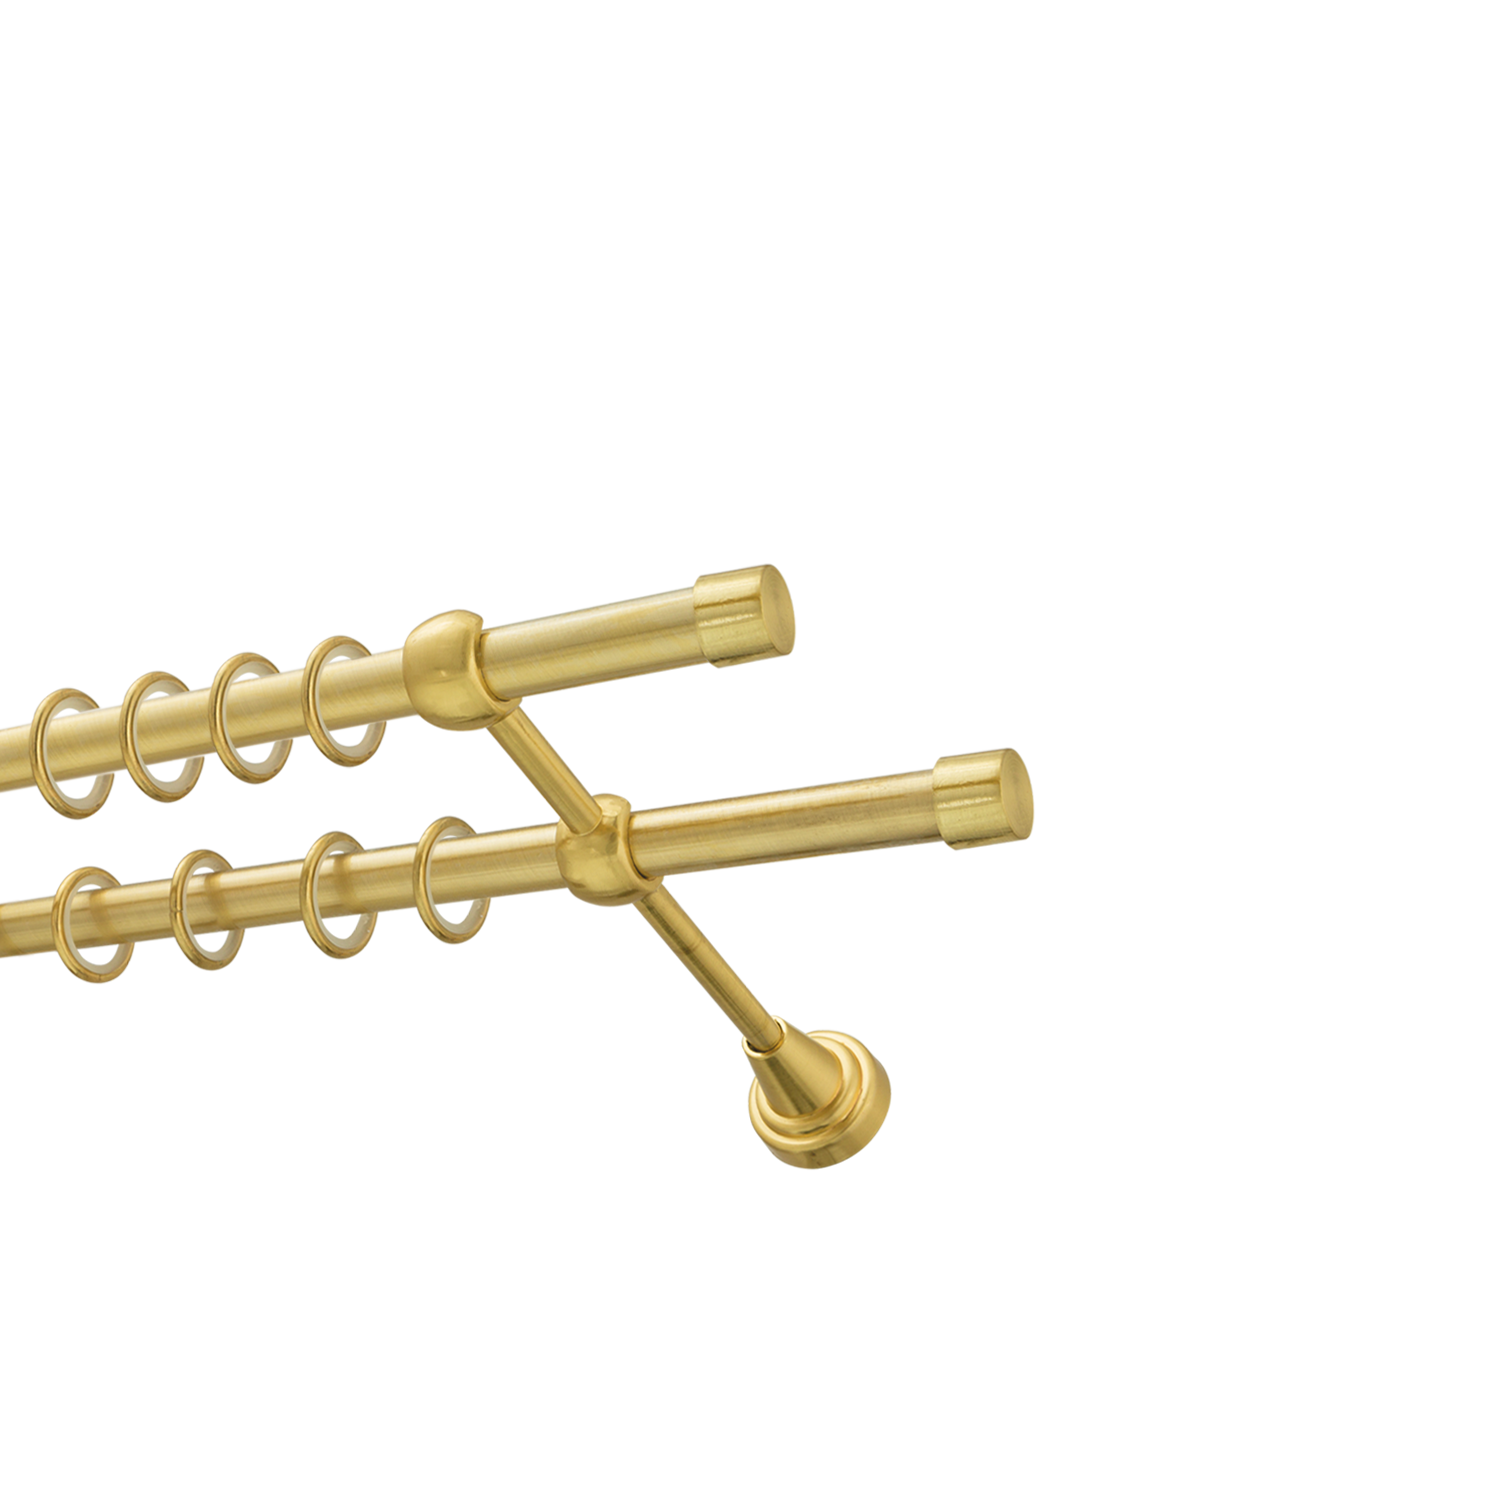 Металлический карниз для штор Заглушка, двухрядный 16/16 мм, золото, гладкая штанга, длина 240 см - фото Wikidecor.ru